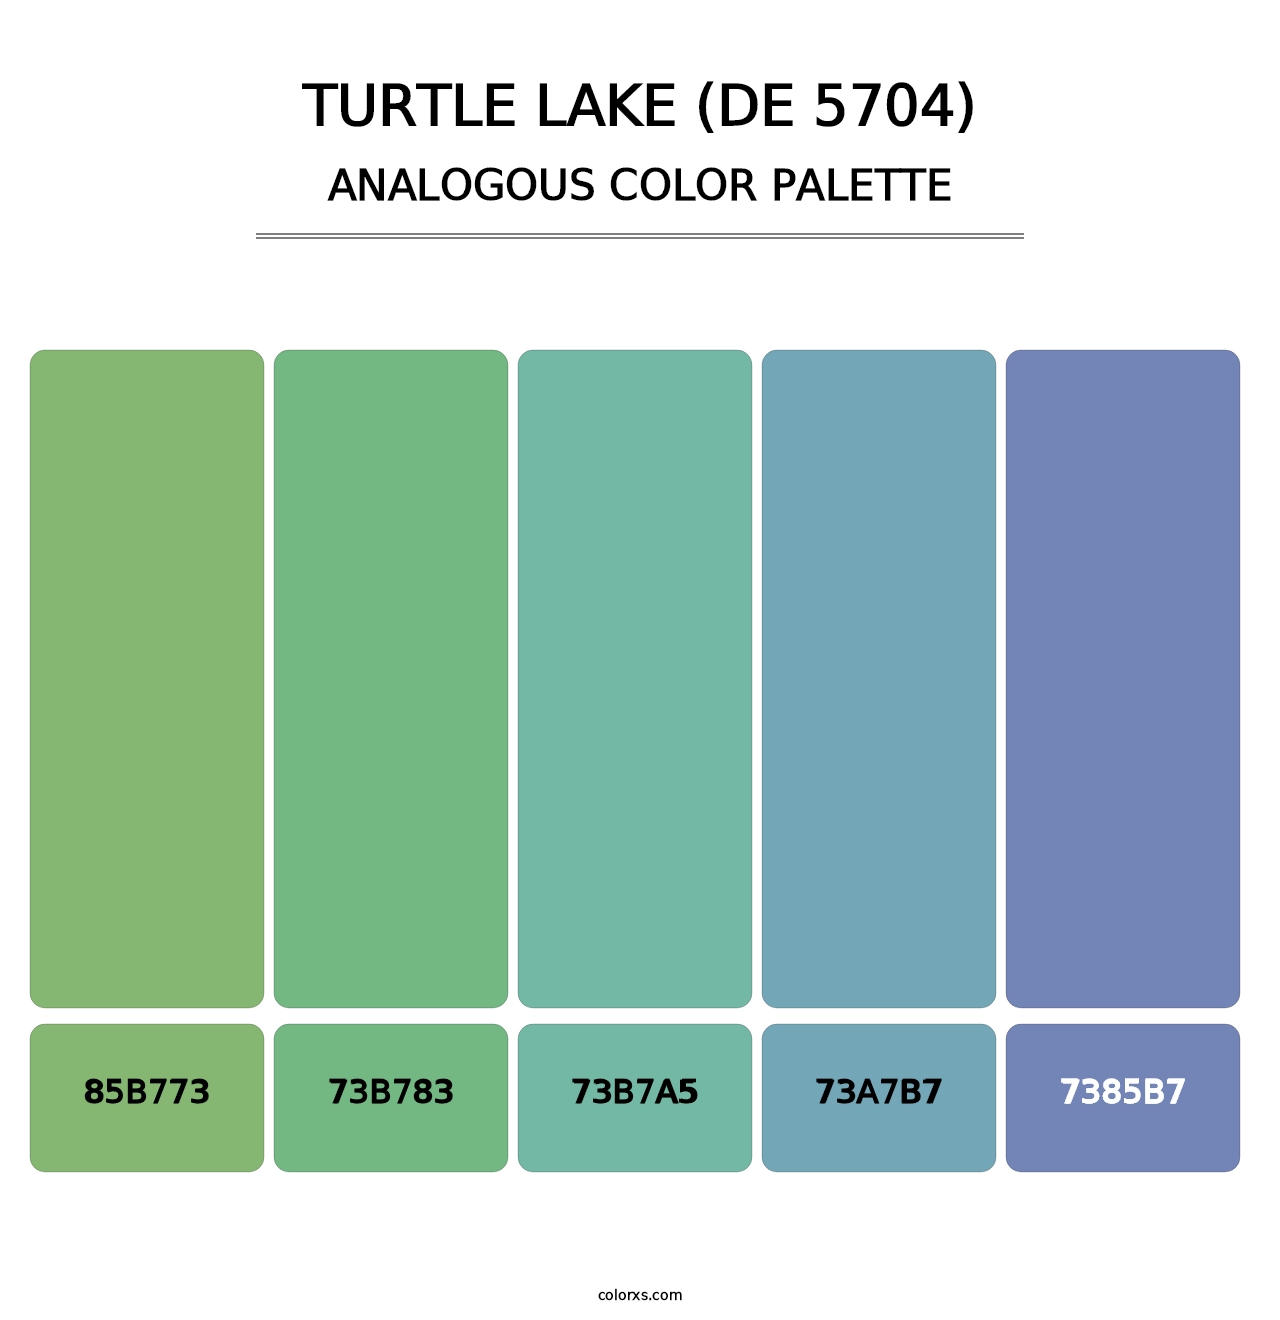 Turtle Lake (DE 5704) - Analogous Color Palette